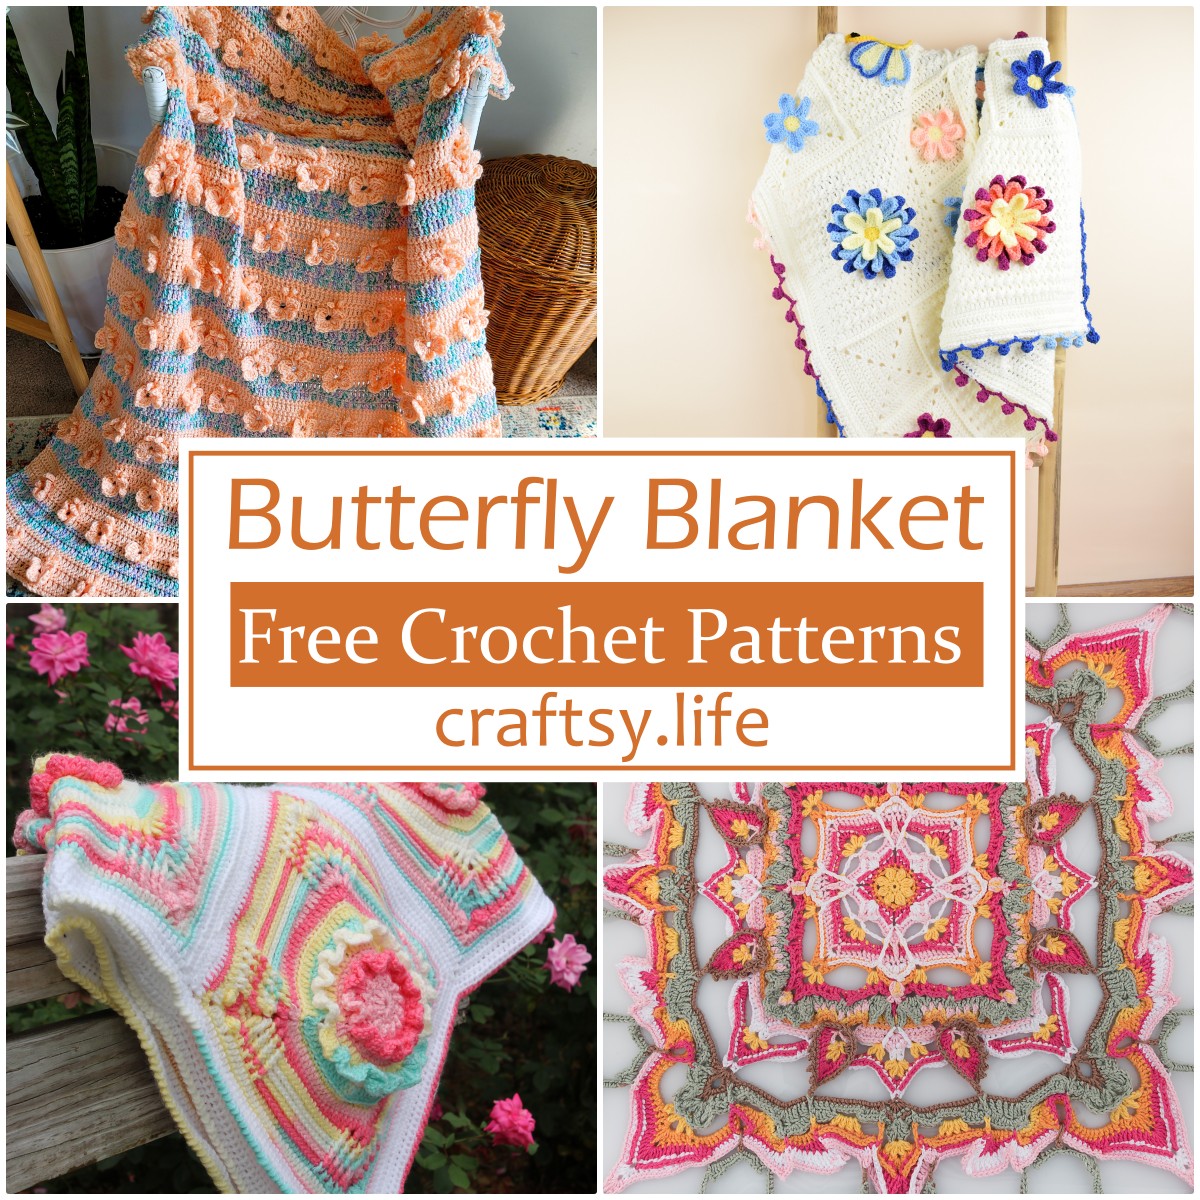 Free Crochet Butterfly Blanket Patterns